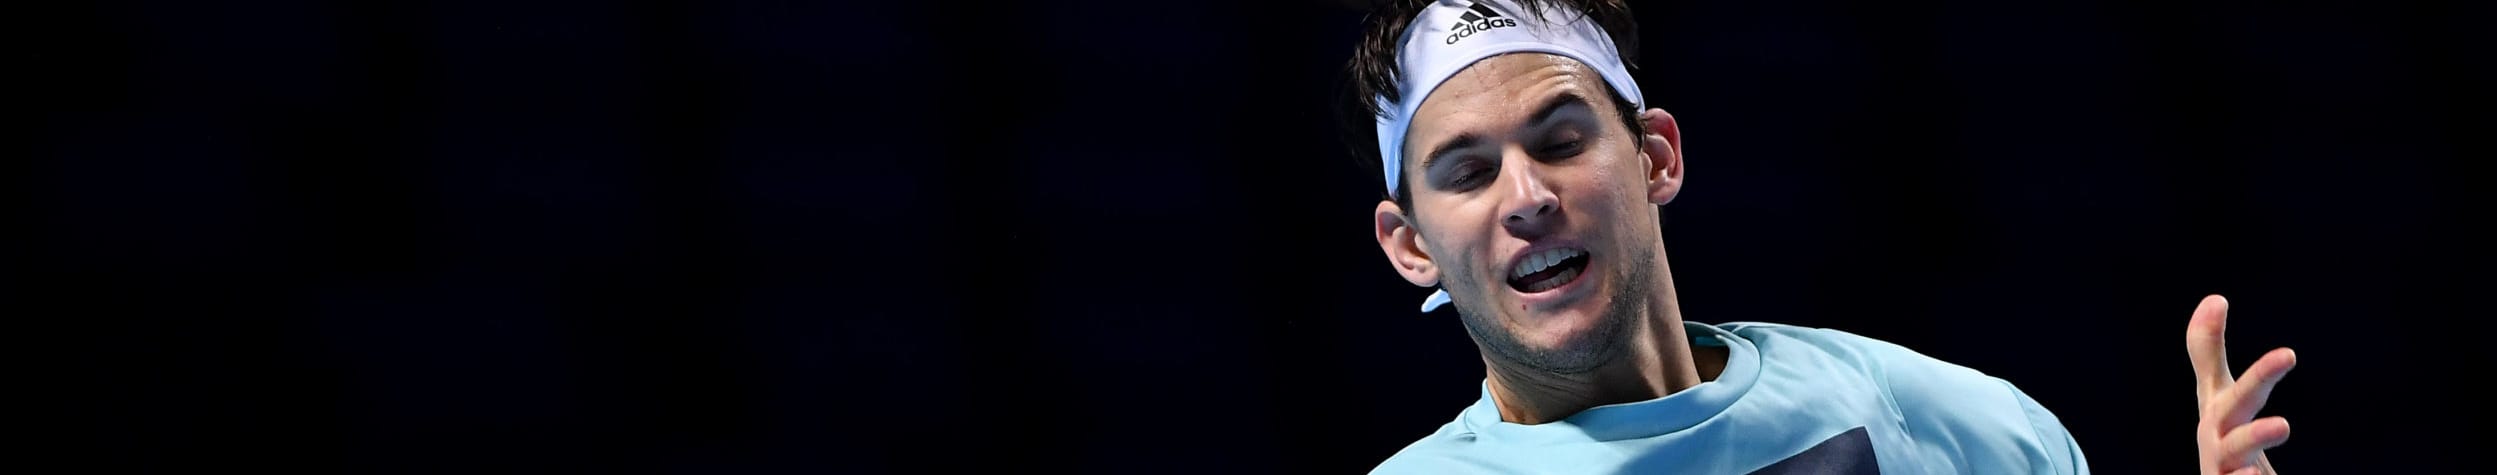 ATP Cup 2020: Nadal e Djokovic superfavoriti, ma occhio alla sfida tra Thiem e Coric